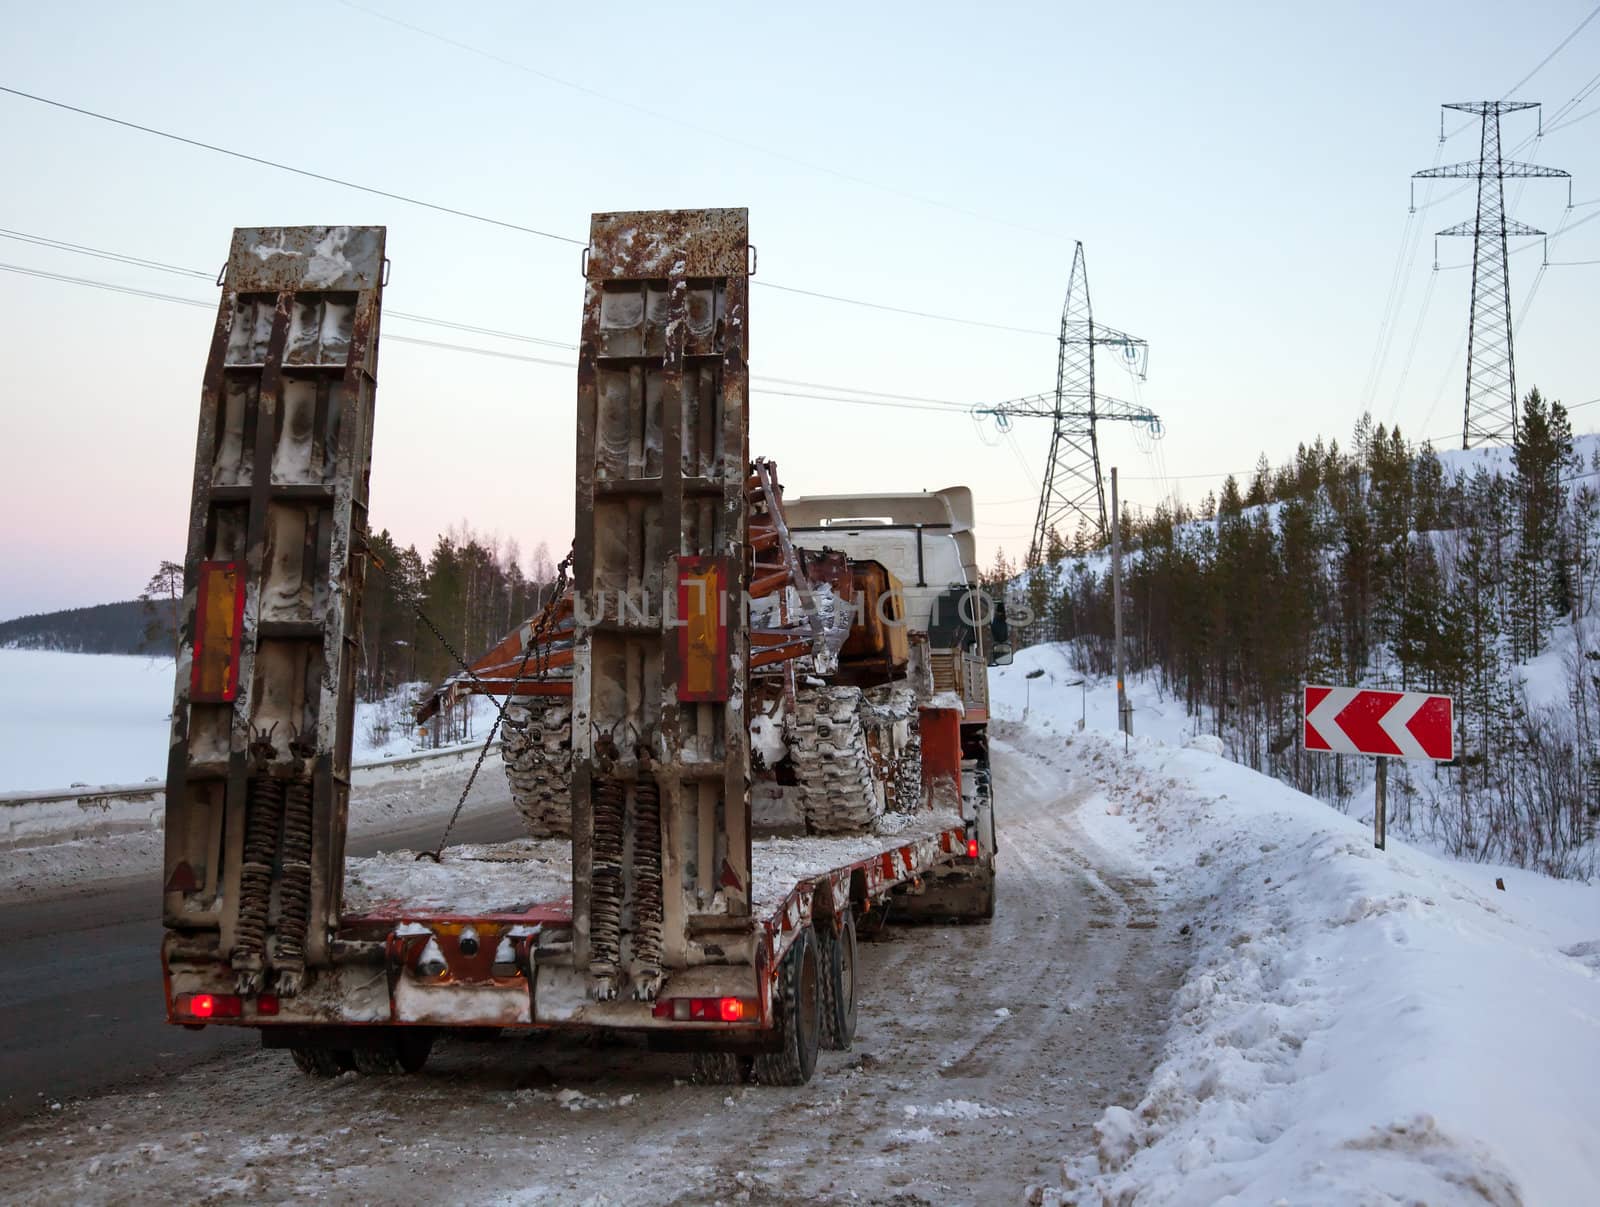 Tractor-trailer transports skidder for restoration works on power lines